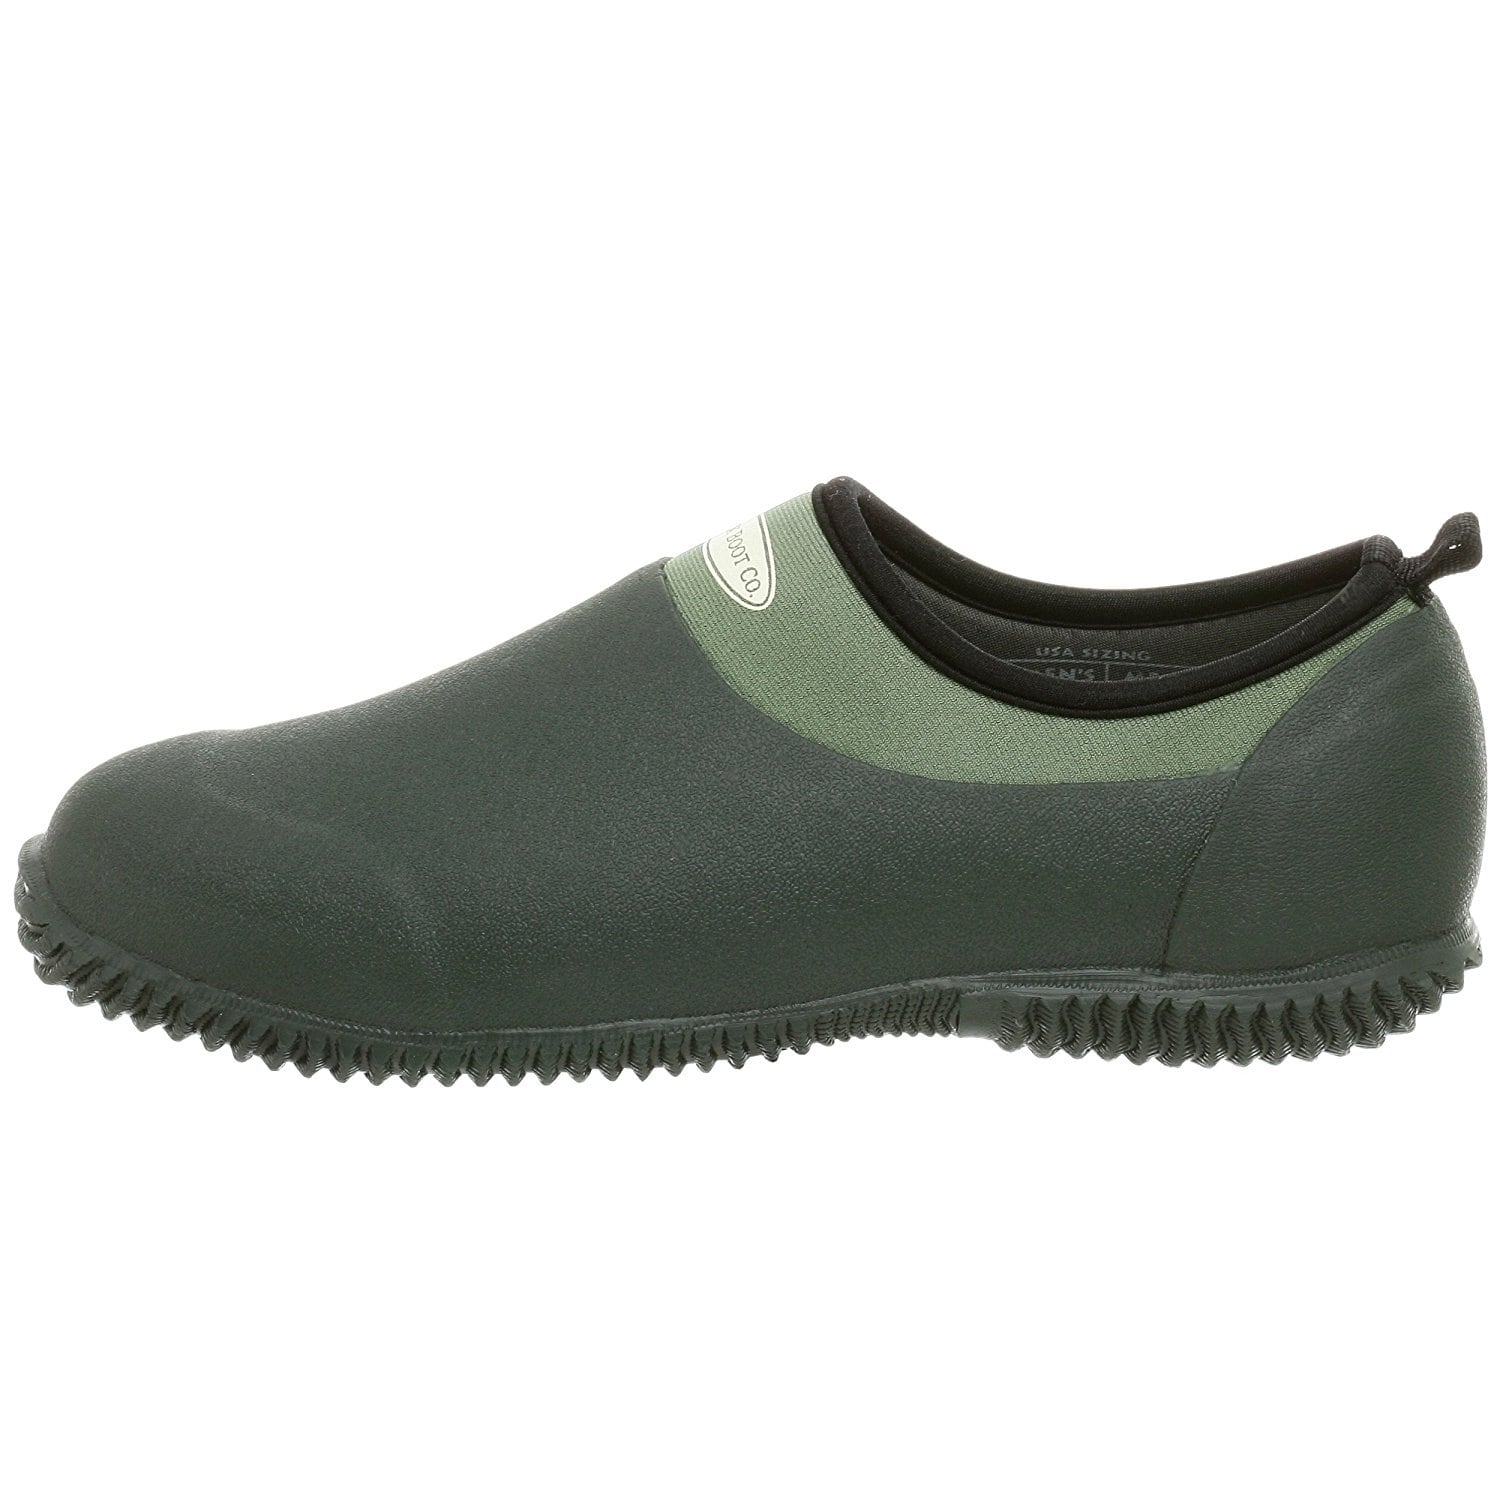 Shop The Original Muckboots Unisex Waterproof Garden Garden Shoe